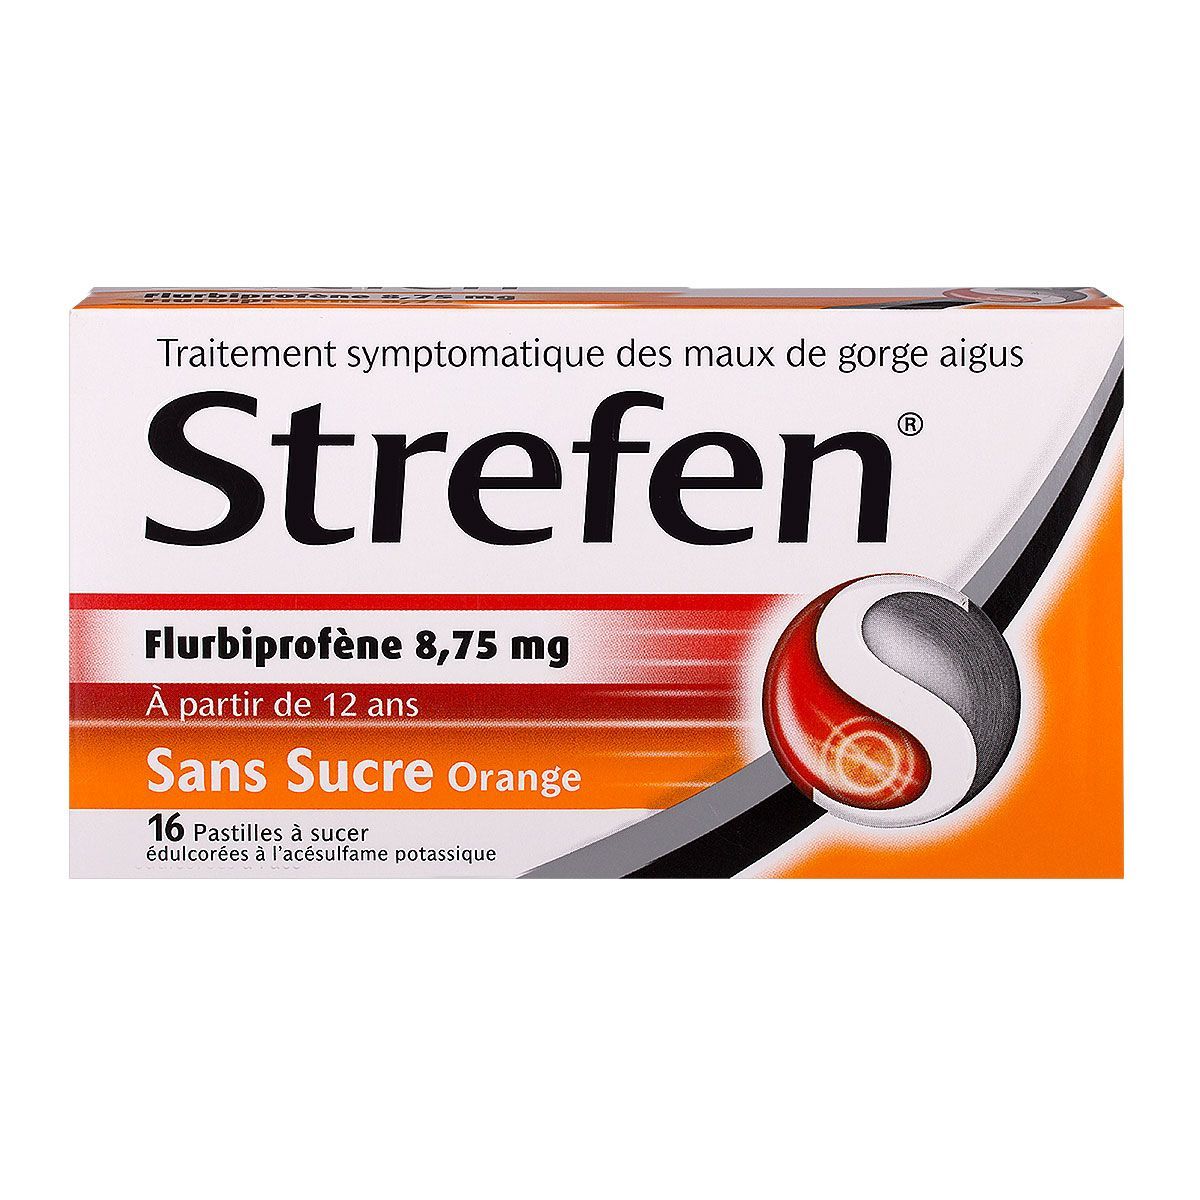 Strefen : ce médicament n'est plus disponible sans ordonnance